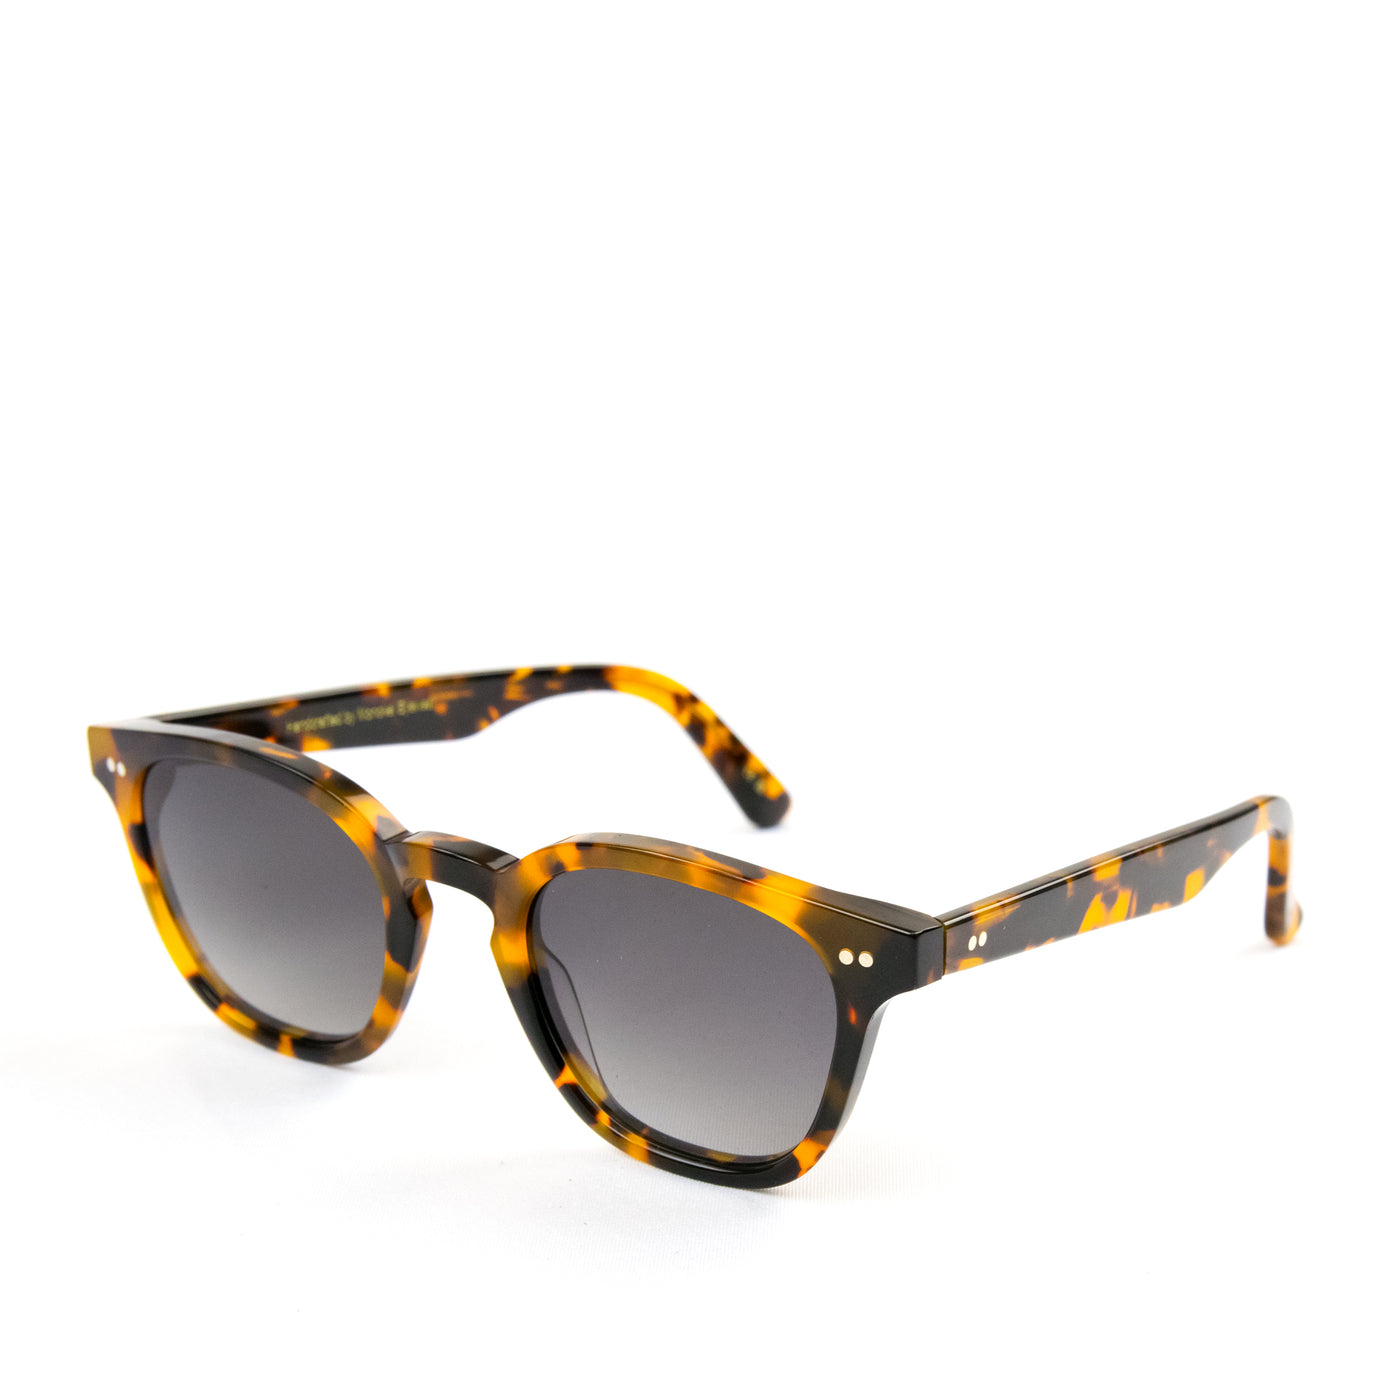 Monokel River Havana Sunglasses Grey Gradient Lens SIDE